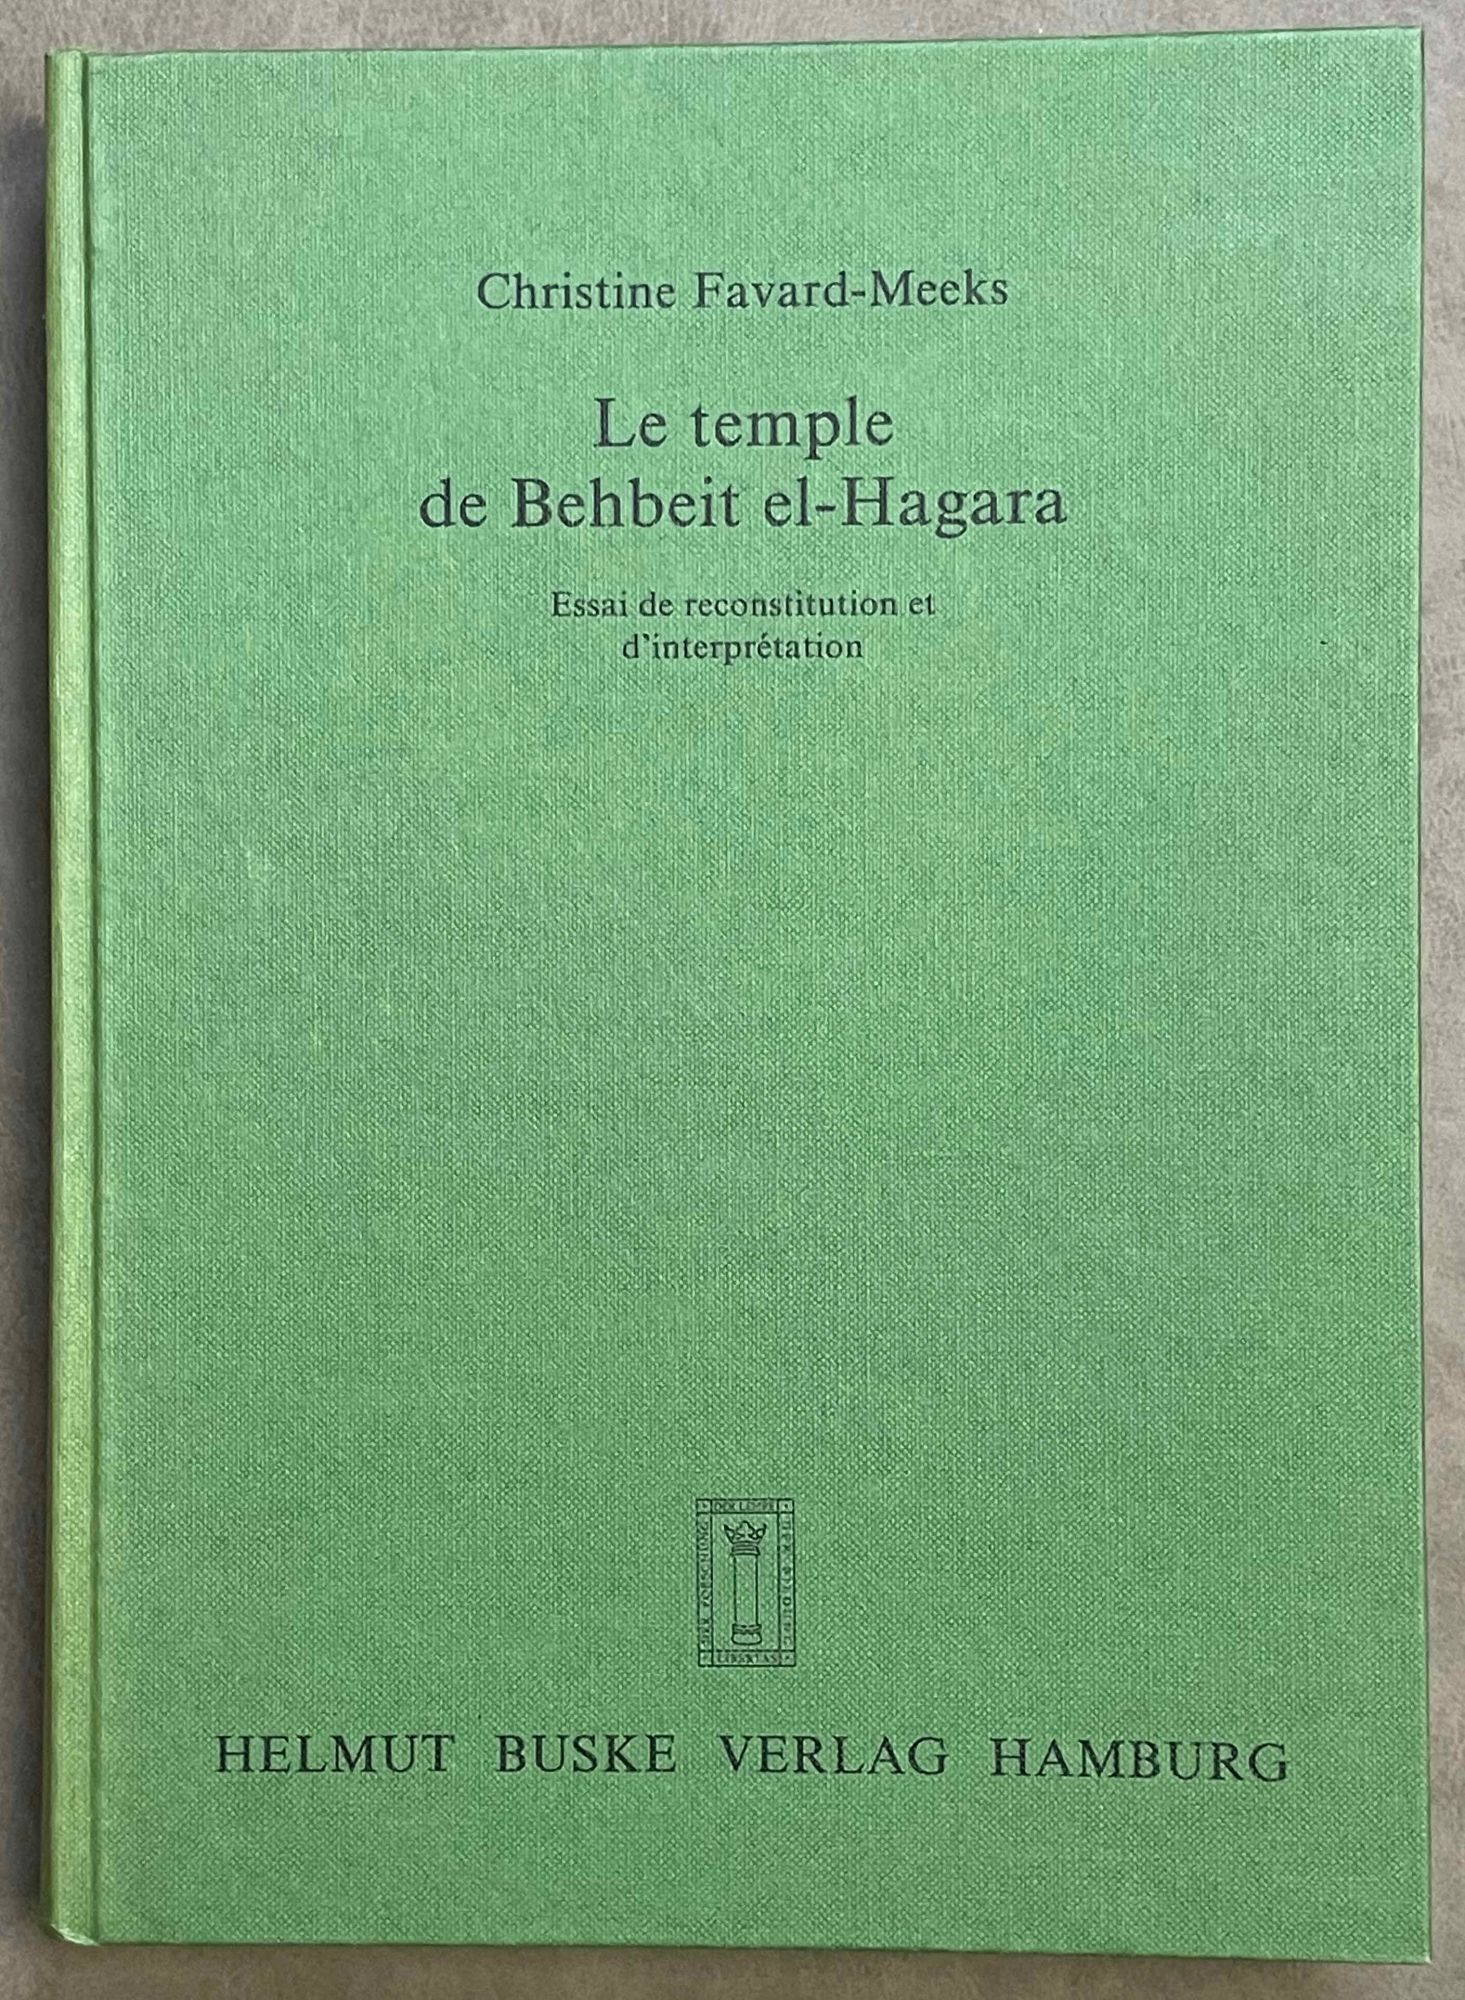 Le temple de Behbeit el-Hagara. Essai de reconstitution et d'interprétation - FAVARD-MEEKS Christine